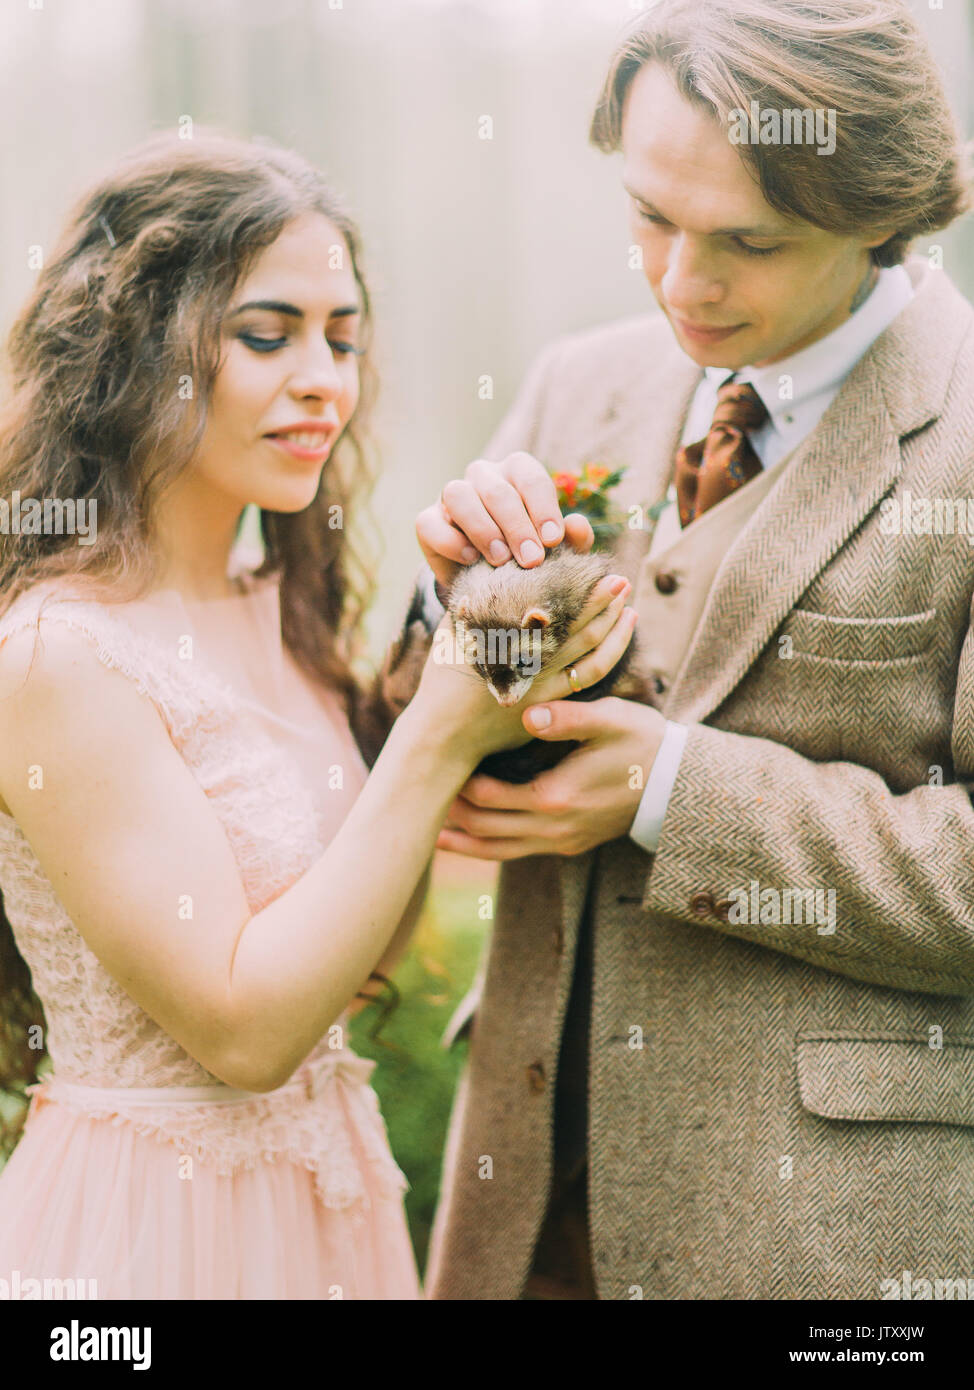 Close-up foto della Sposa sorridente tenendo il marrone ferret mentre il vintage vestito sposo petting è l'animale. La composizione della foresta. Foto Stock